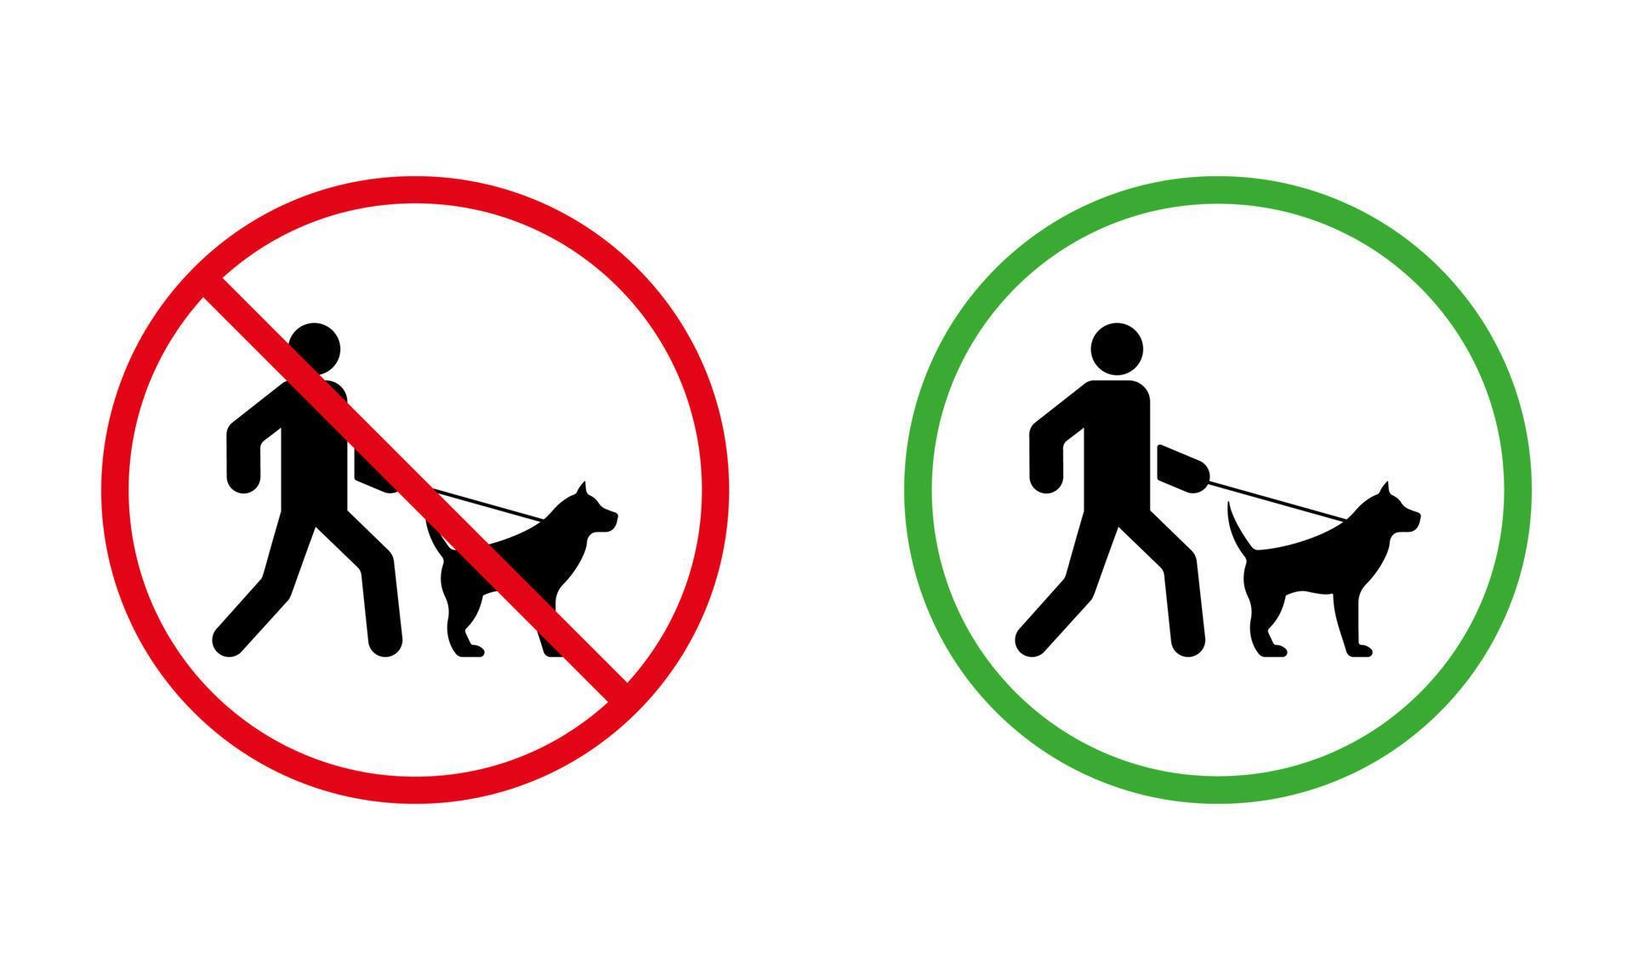 zona di divieto per l'icona della siluetta nera del cane da passeggio. pittogramma vietato camminare maschio e animale domestico al guinzaglio. vietare la passeggiata simbolo rosso del cerchio di arresto. consentire la passeggiata nell'area degli animali segno verde. illustrazione vettoriale isolata.